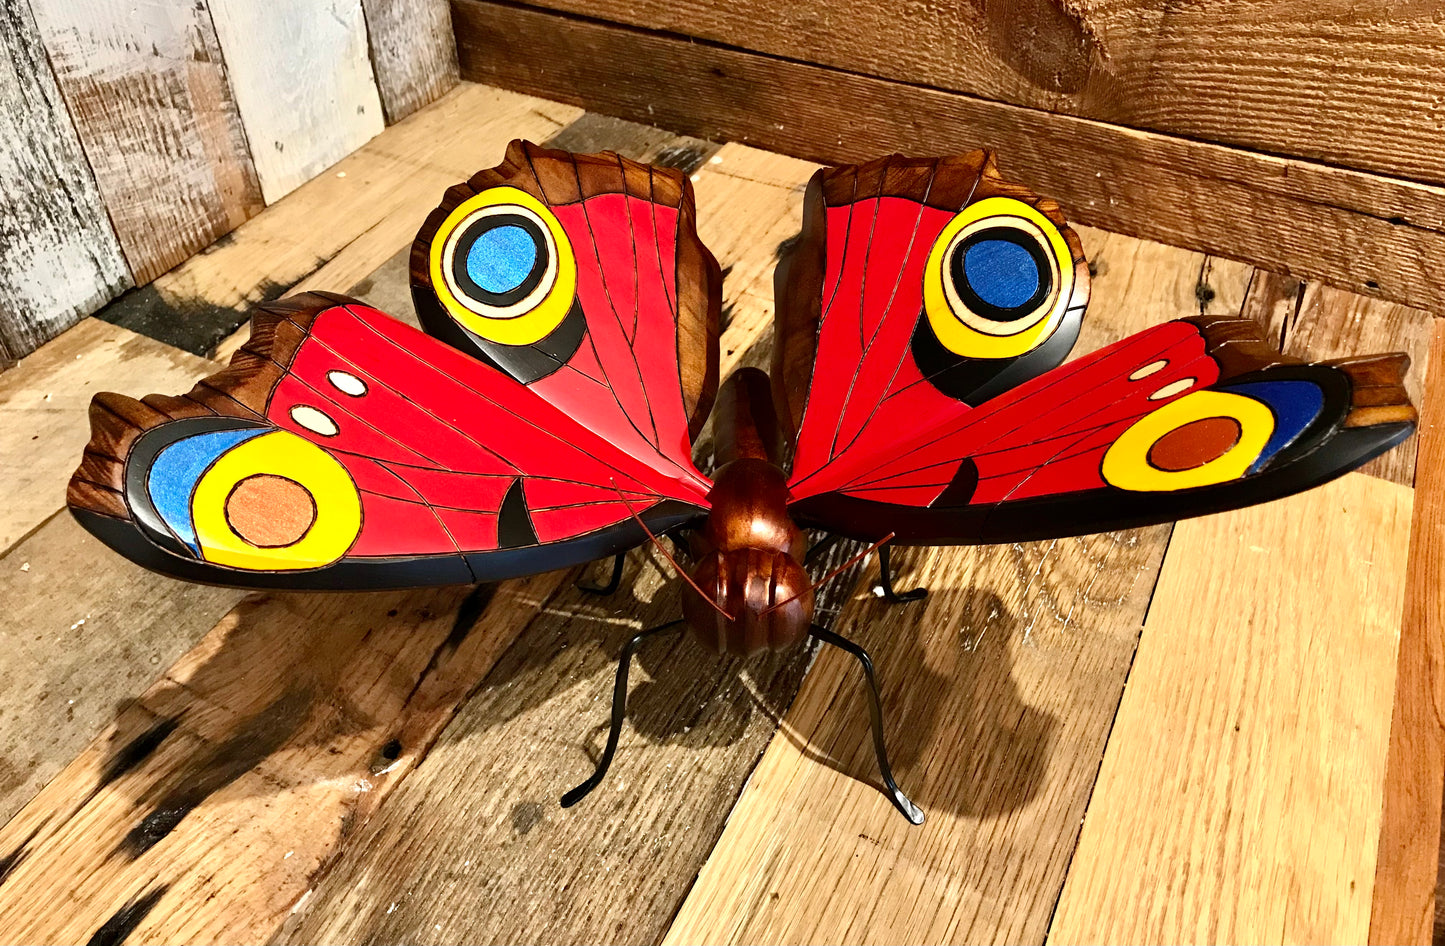 Butterfly Art - Restoration Oak